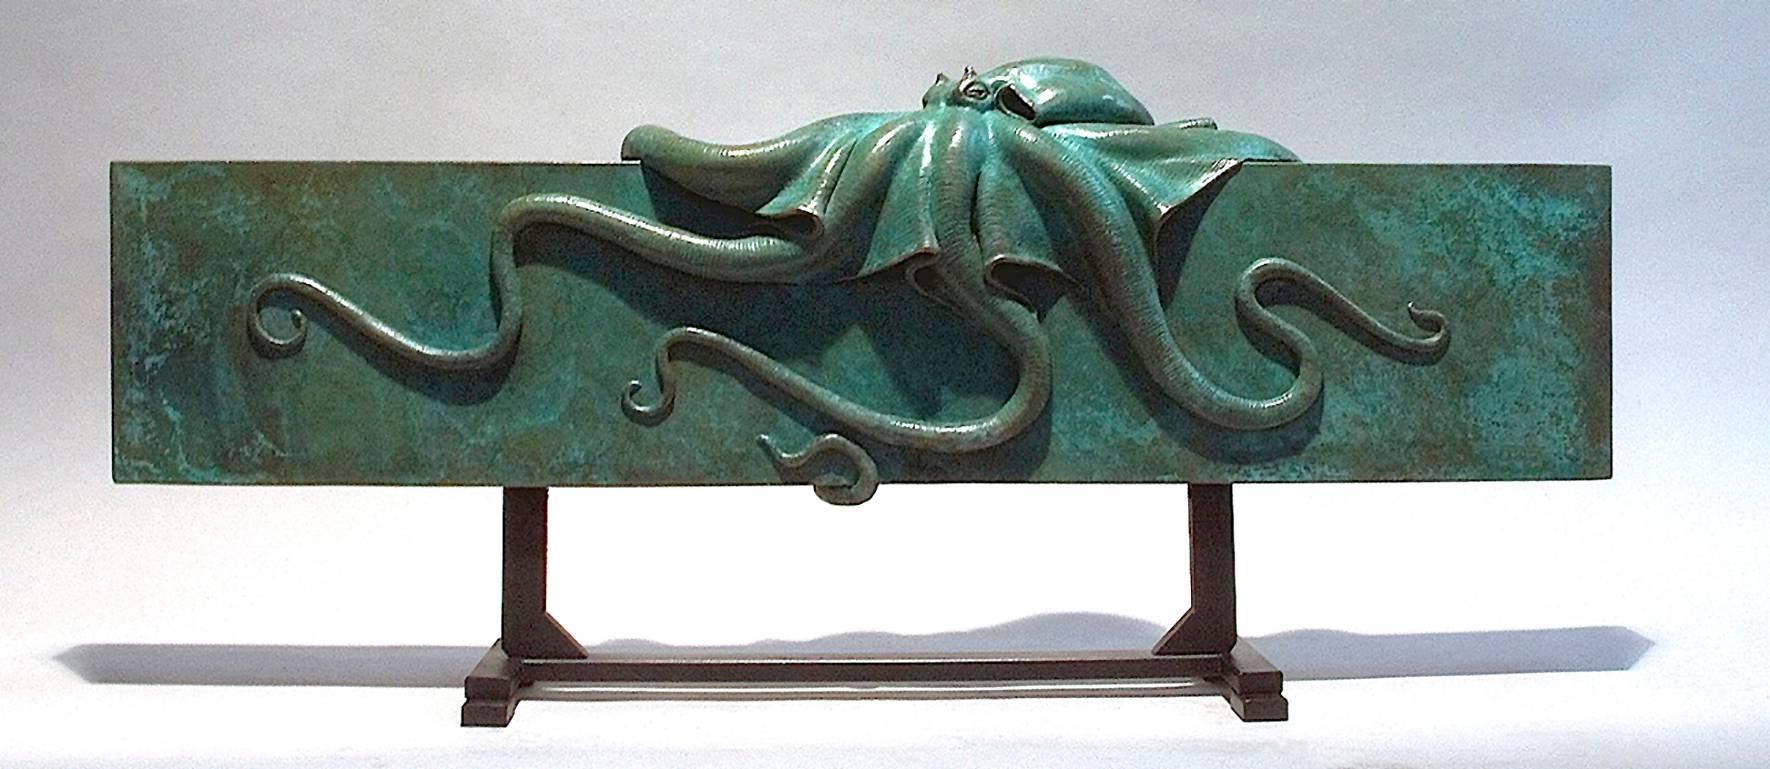 Bela Bacsi Figurative Sculpture - Octopus